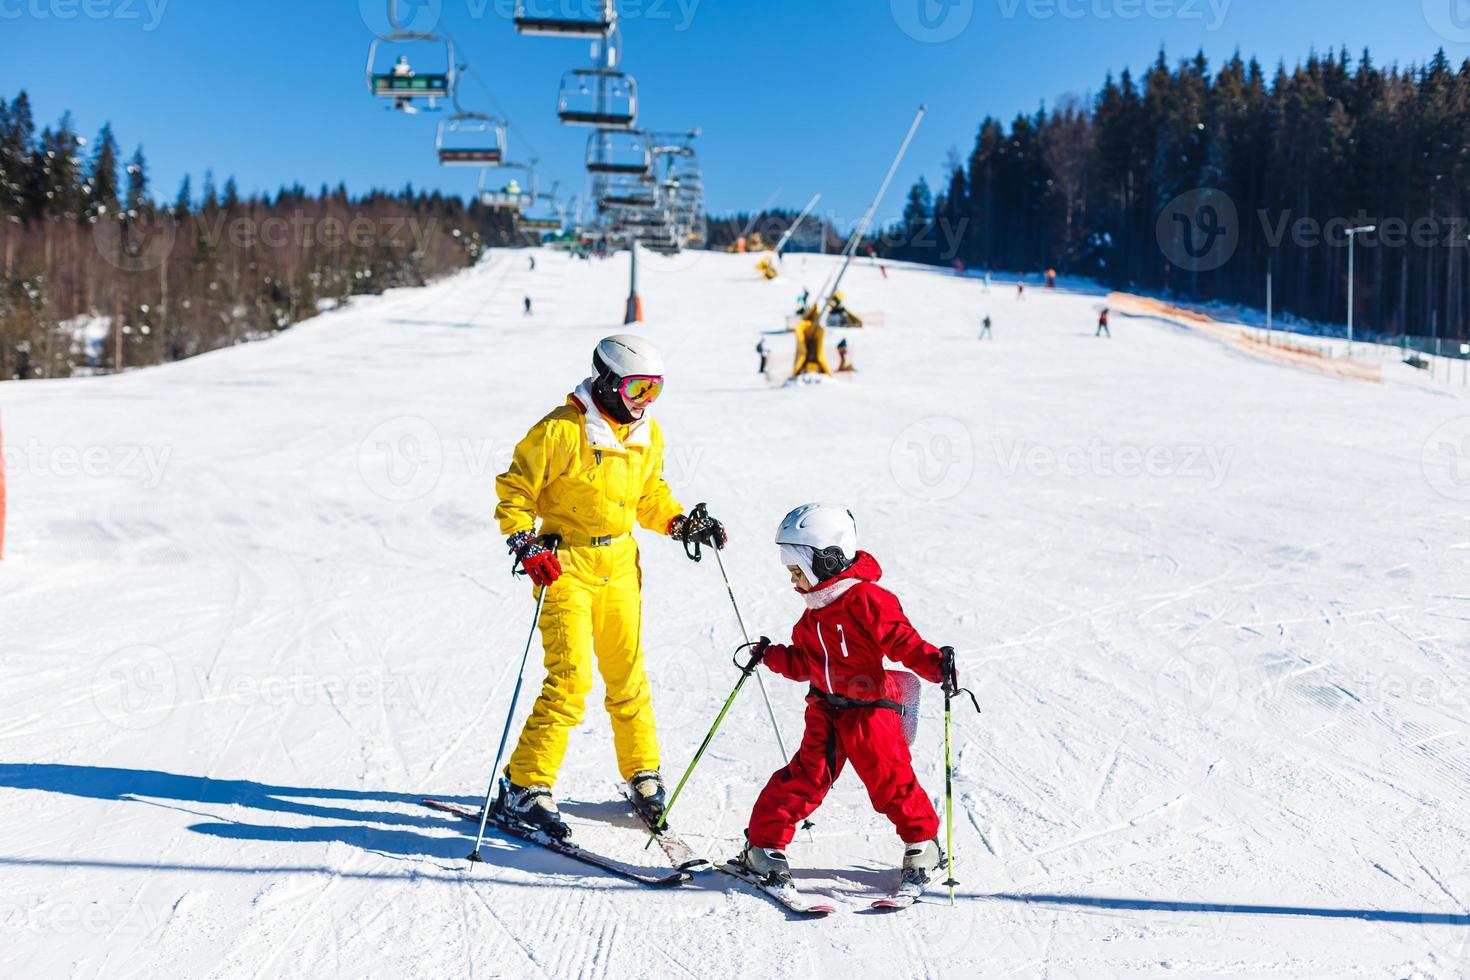 madre e hija divirtiéndose y aprendiendo a esquiar dando los primeros pasos con el apoyo de mamá en una estación de esquí de invierno en la colina de la montaña. foto